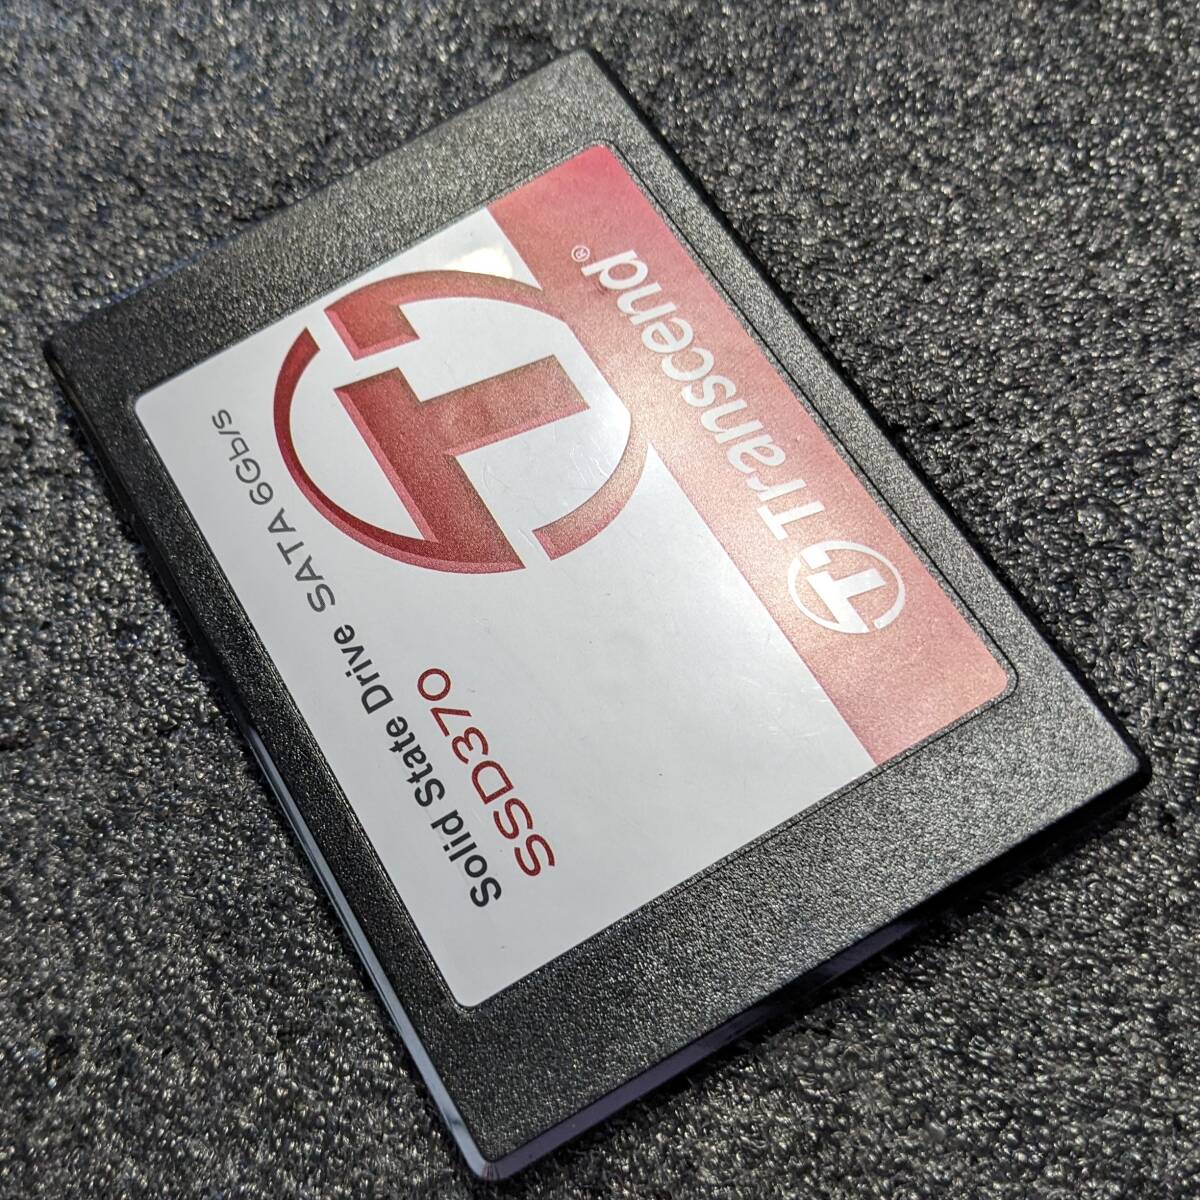 【中古】Ttranscend SSD370 64GB TS64GSSD370 [2.5インチ SATA3 7mm厚 MLC 健康状態99%]